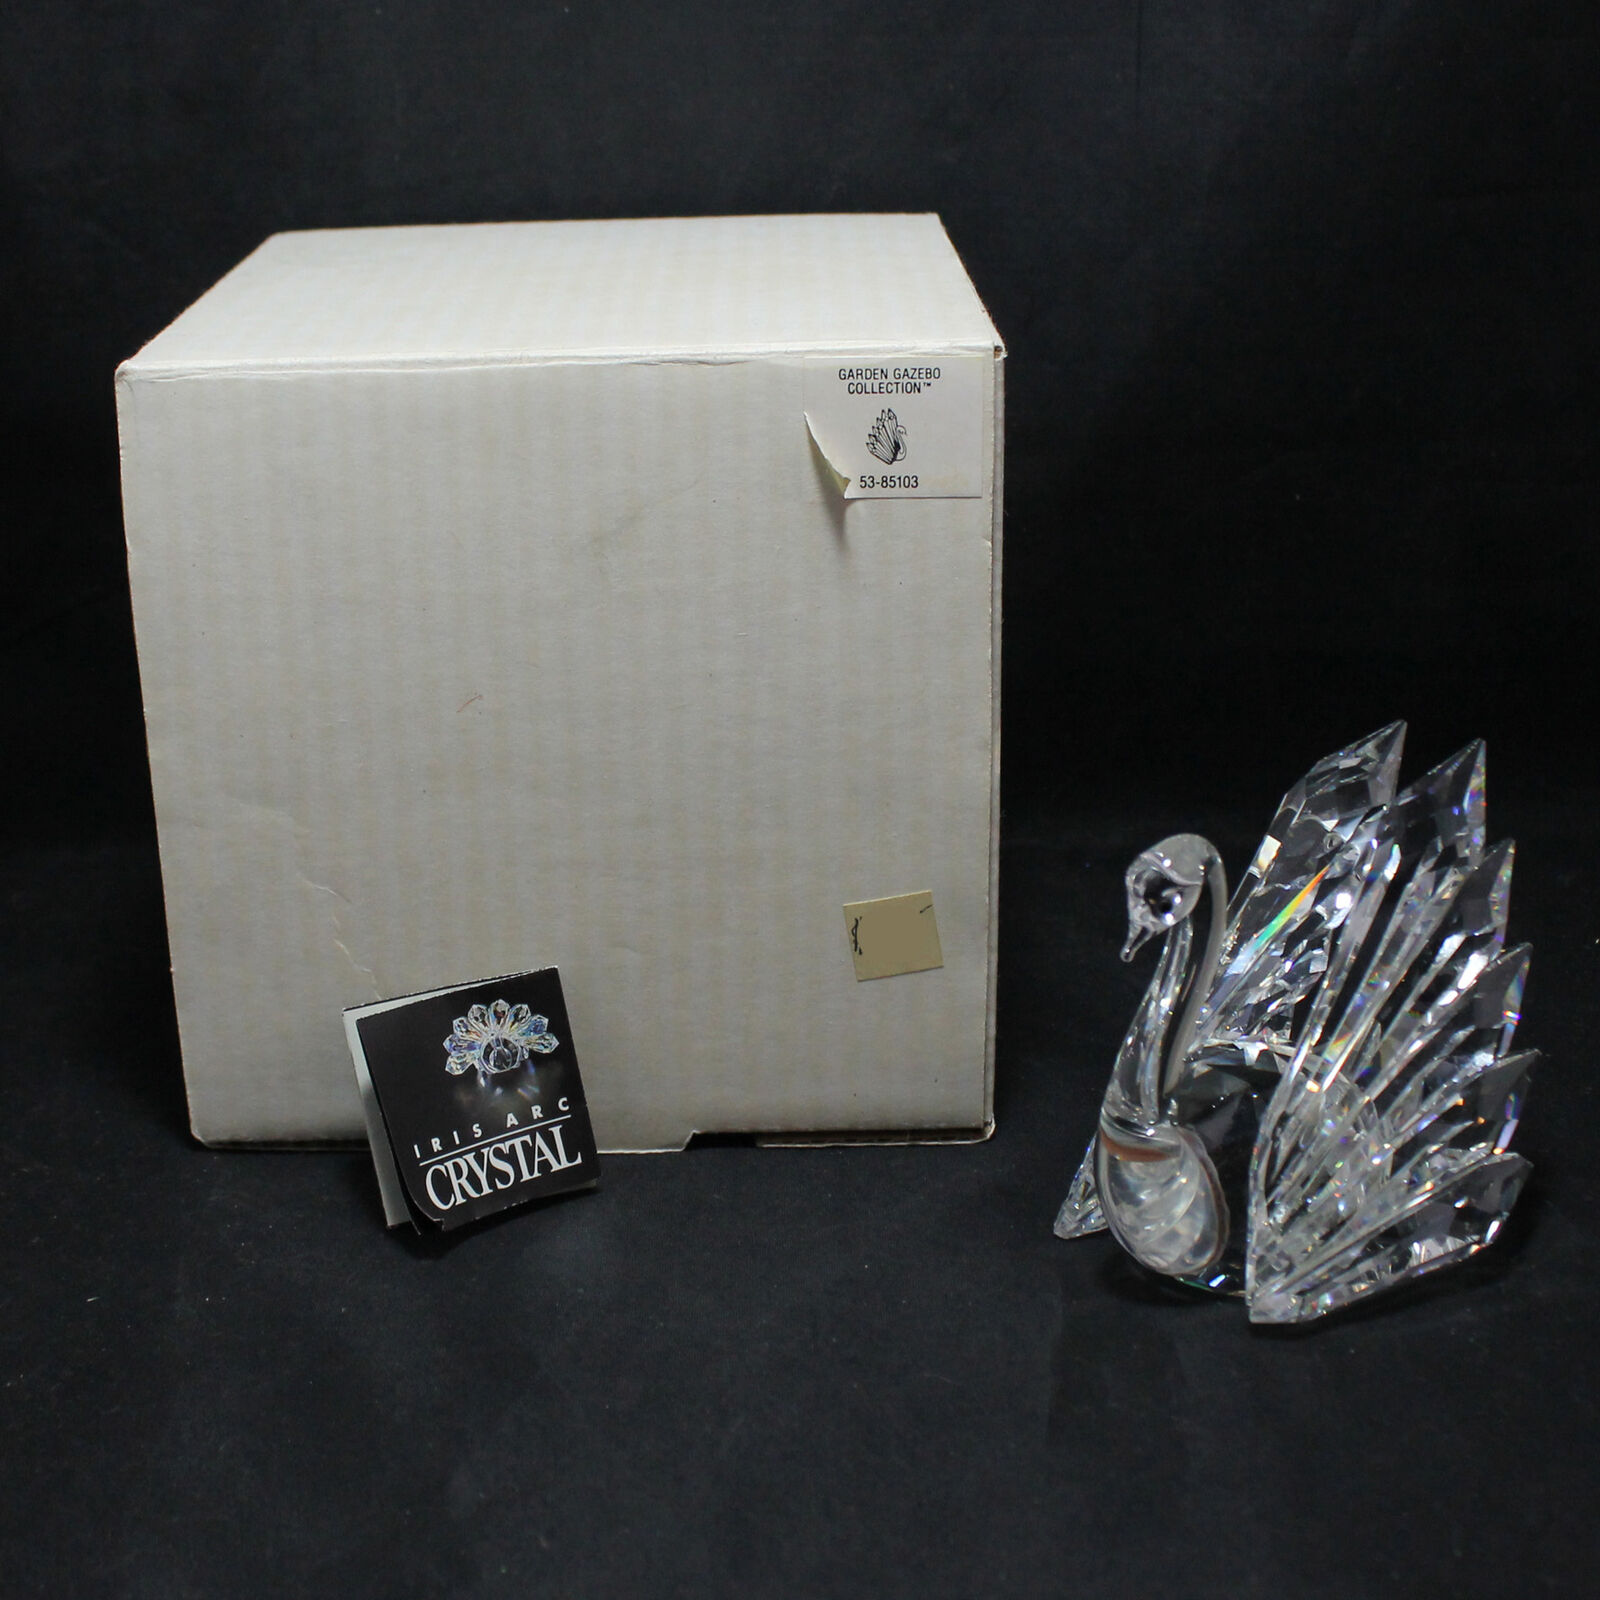 Iris Arc Crystal Garden Gazebo Collection 53-85103 Swan